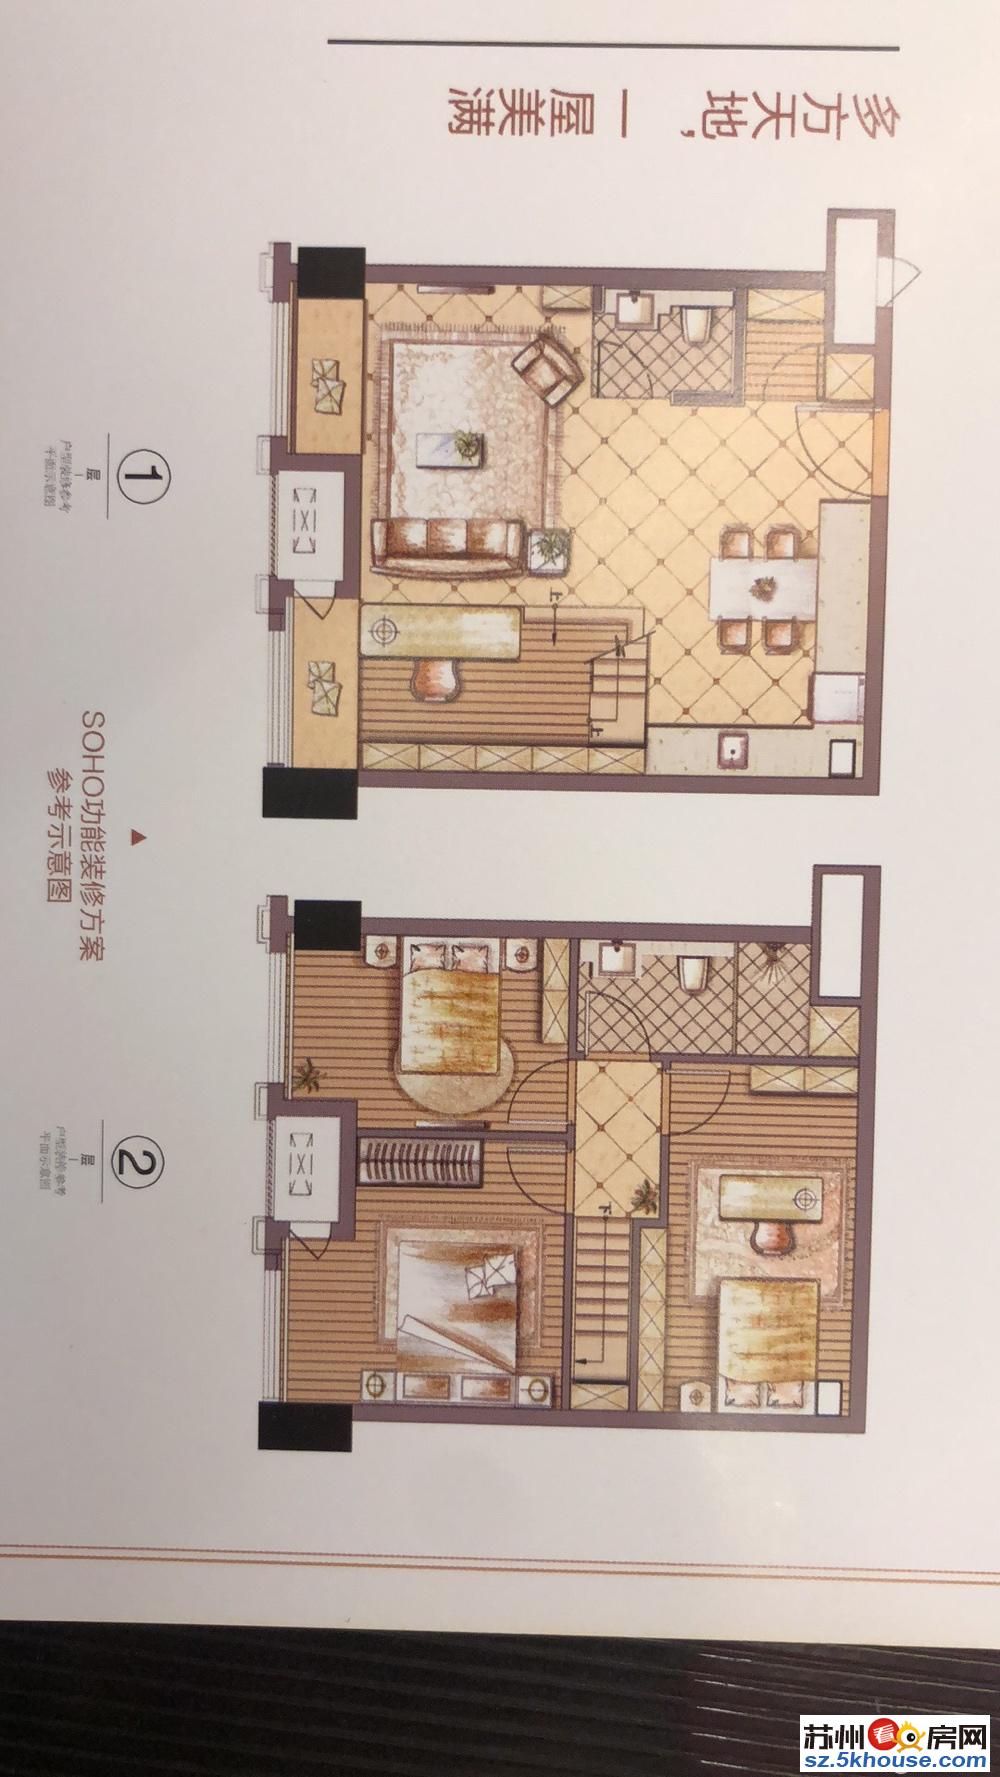 星光耀30平复式公寓姑苏只中心双地铁交汇低价小面积